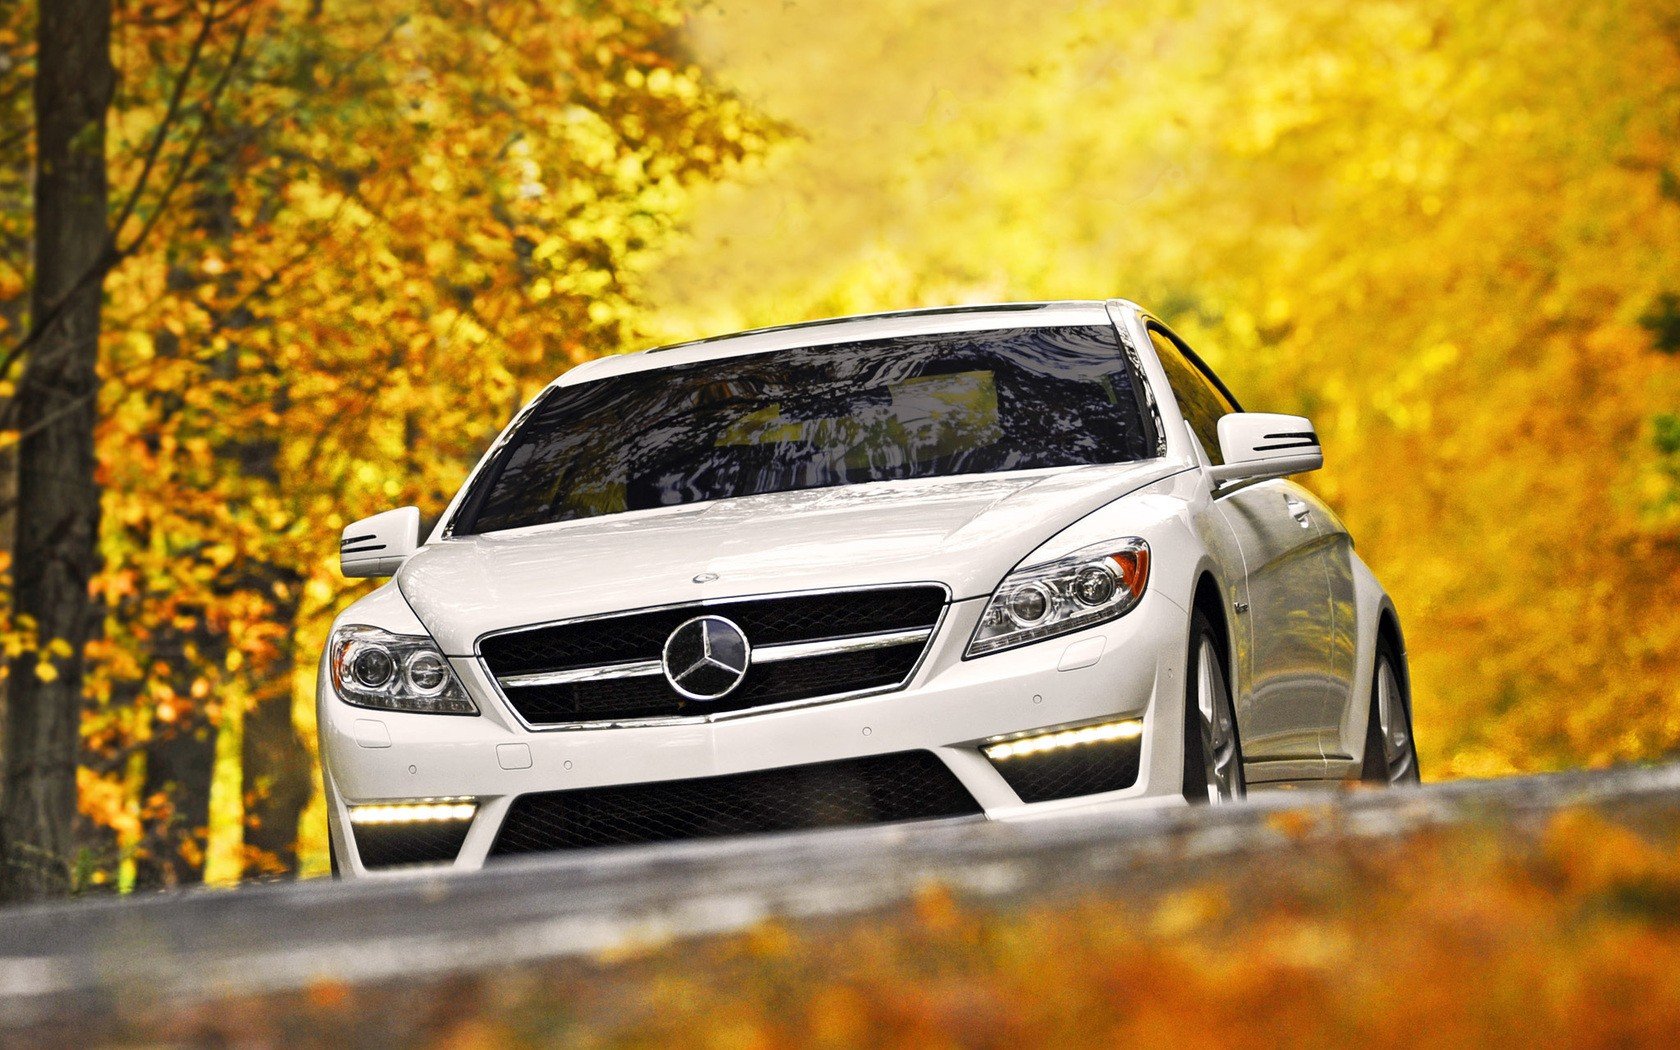 Mercedes Benz Car Wallpaper Hd Download